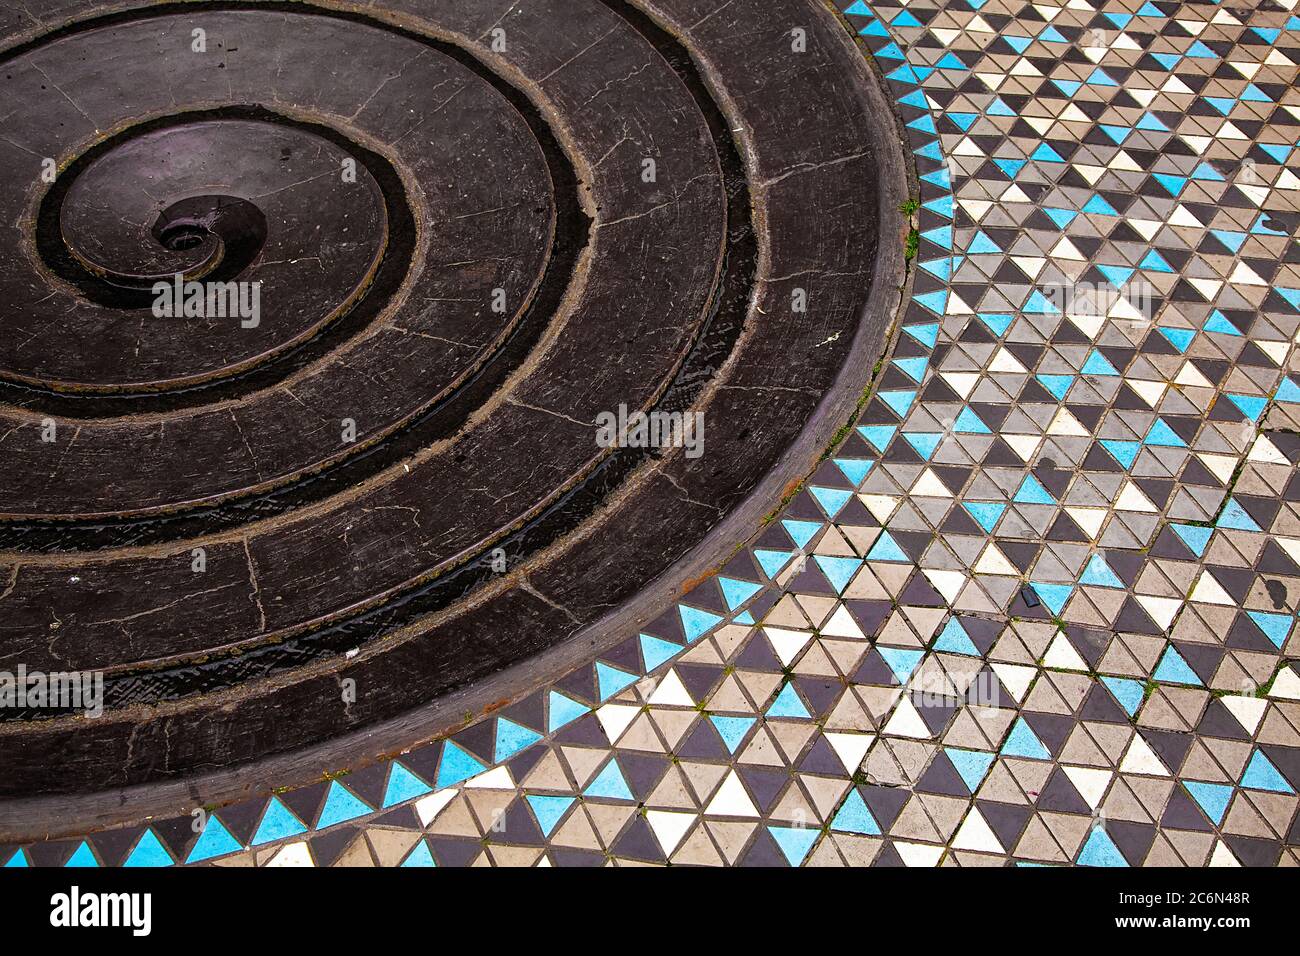 Teil des abstrakten Spiralbrunnens mit Mosaikboden, Draufsicht. Ungewöhnliche Orte in Deutschland. Stockfoto